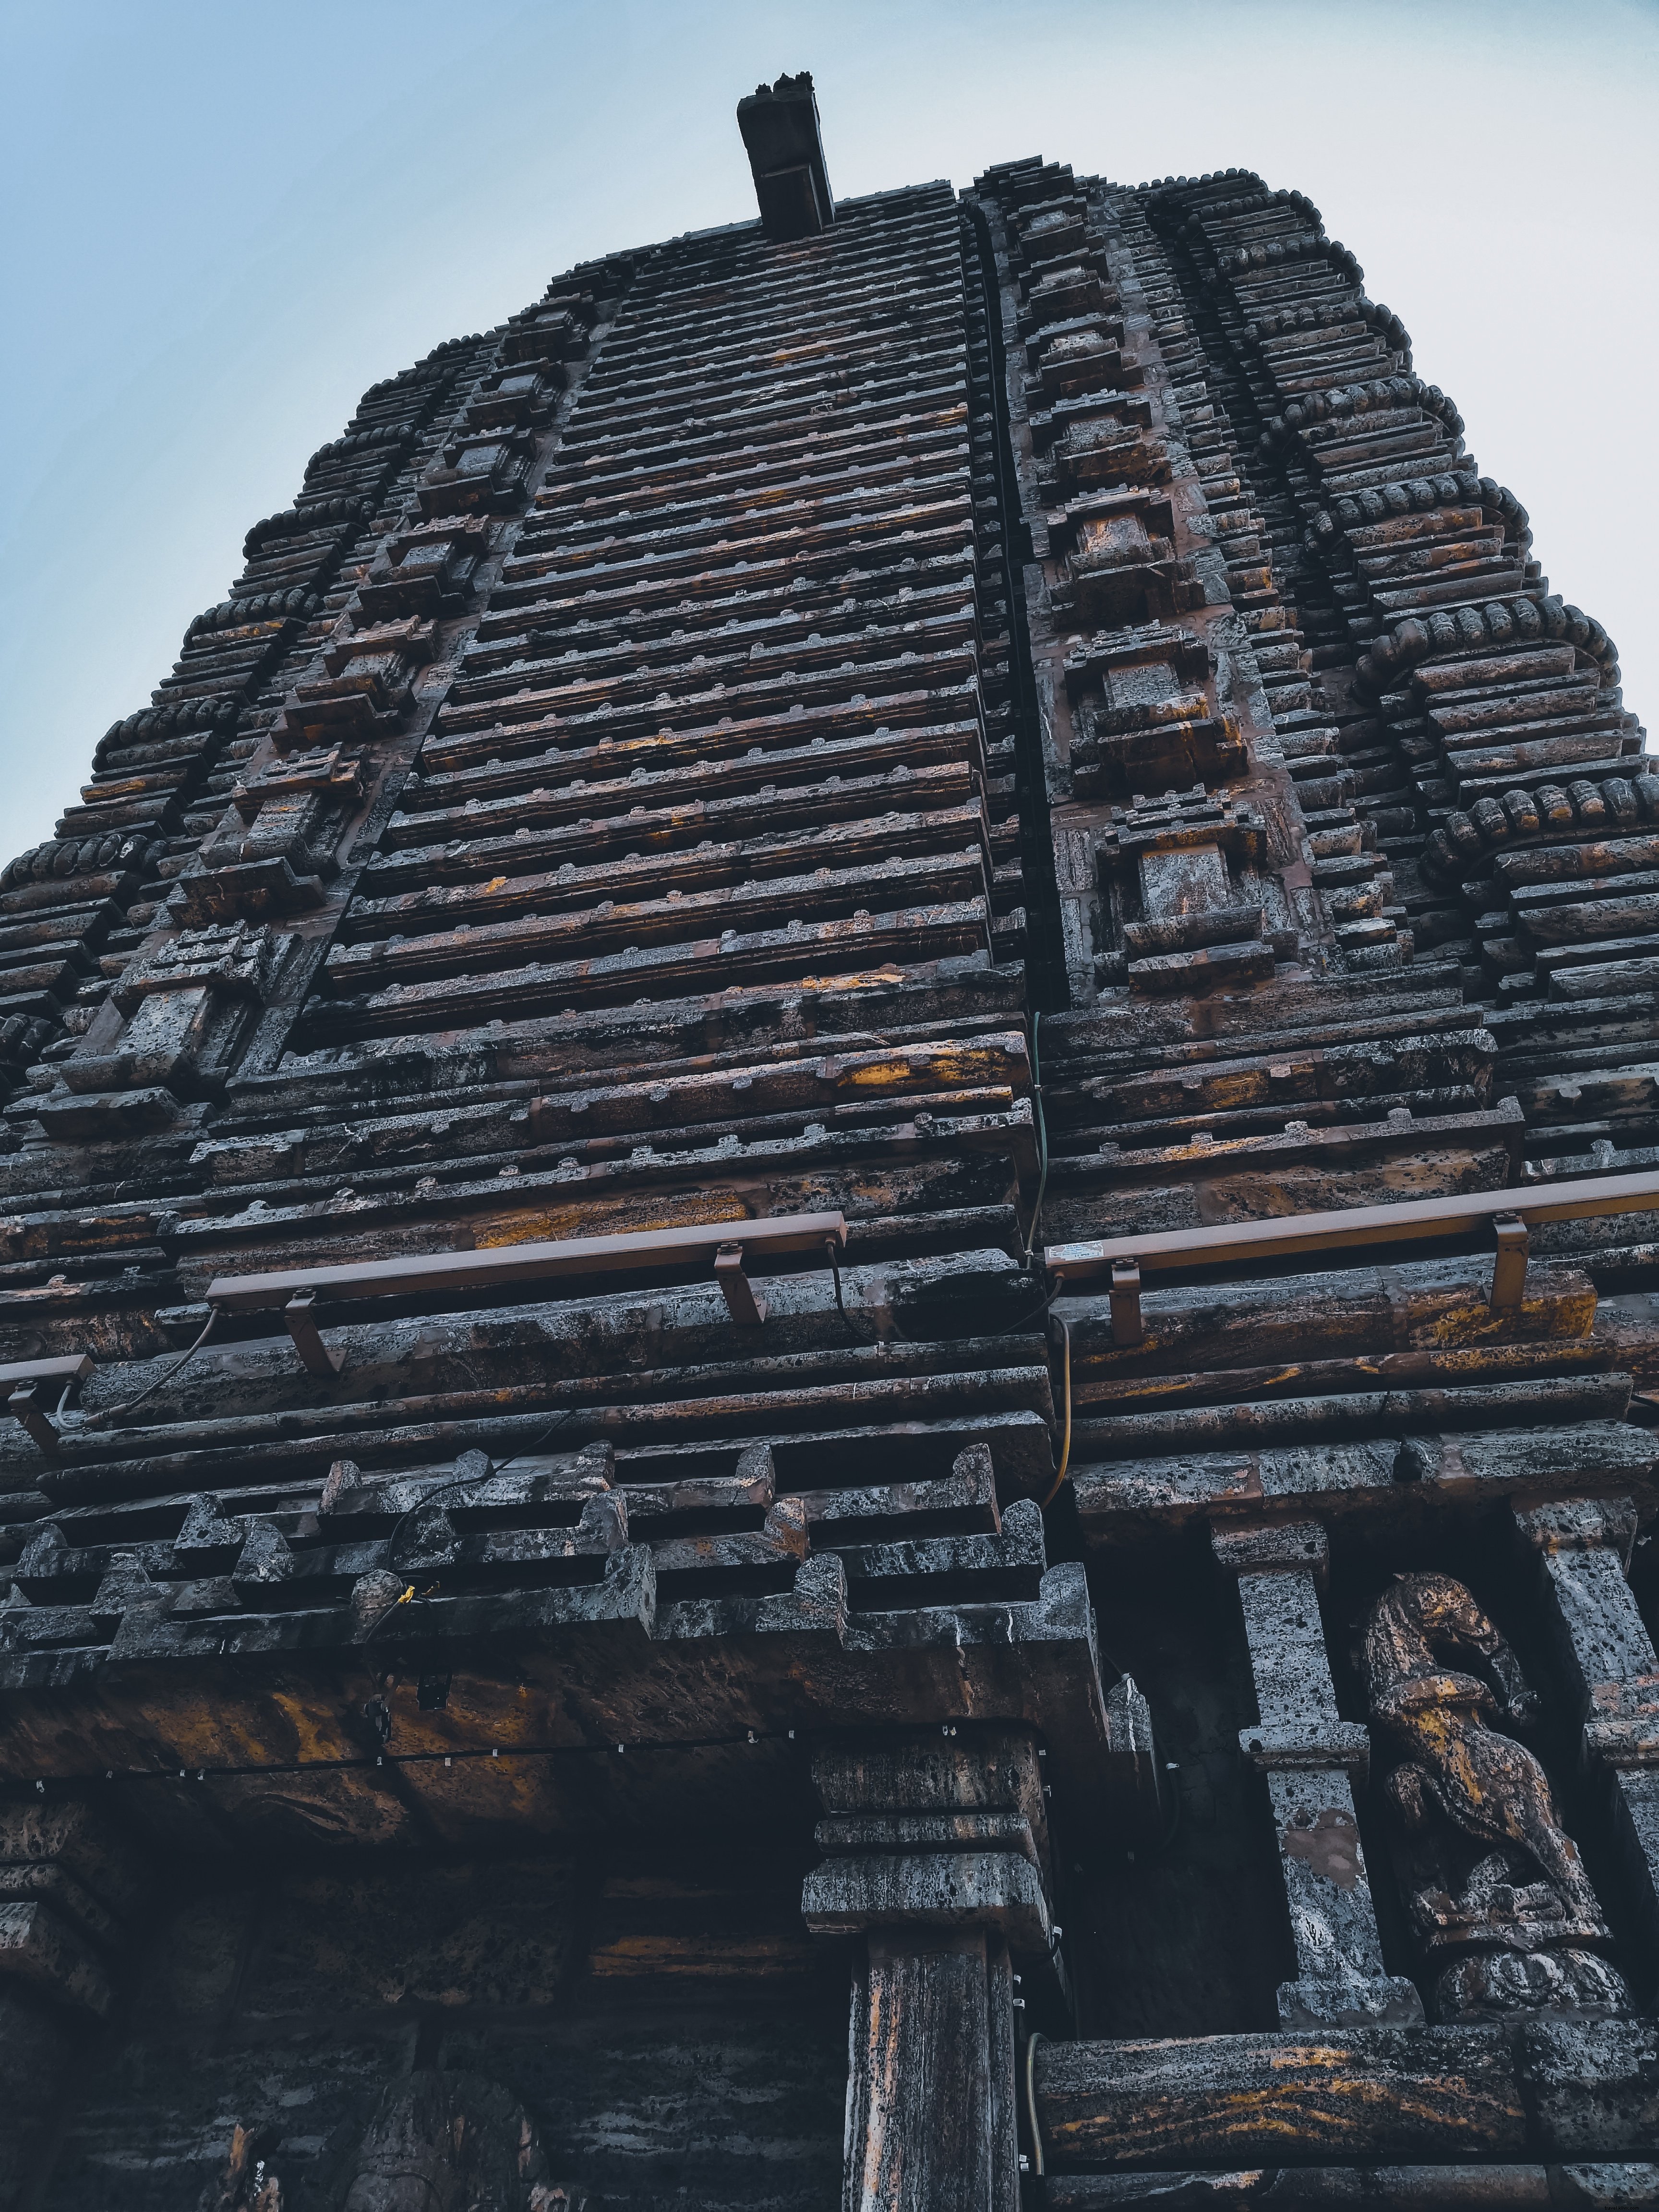 背の高い寺院の写真を見上げる 